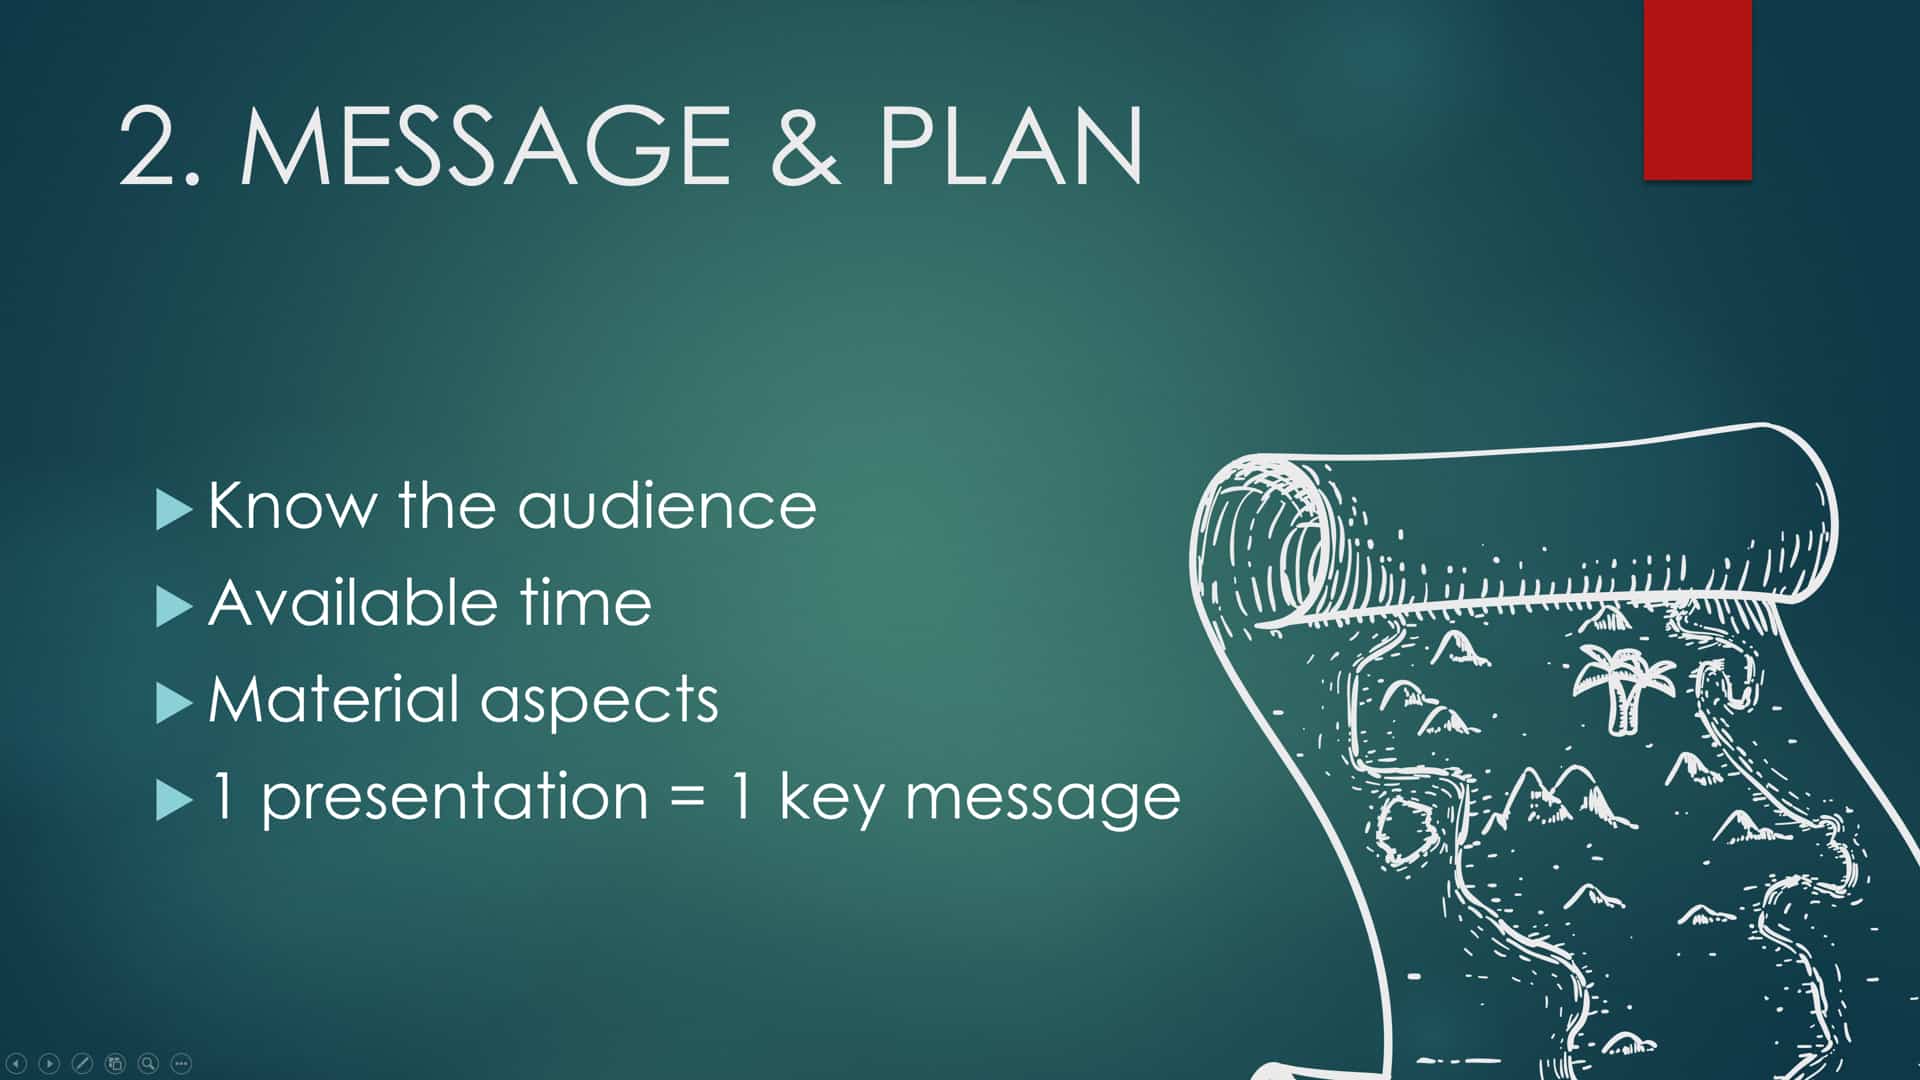 Pour construire son plan, connaître son audience, le temps disponible, les aspects matériels et focaliser sur un seul message clef !